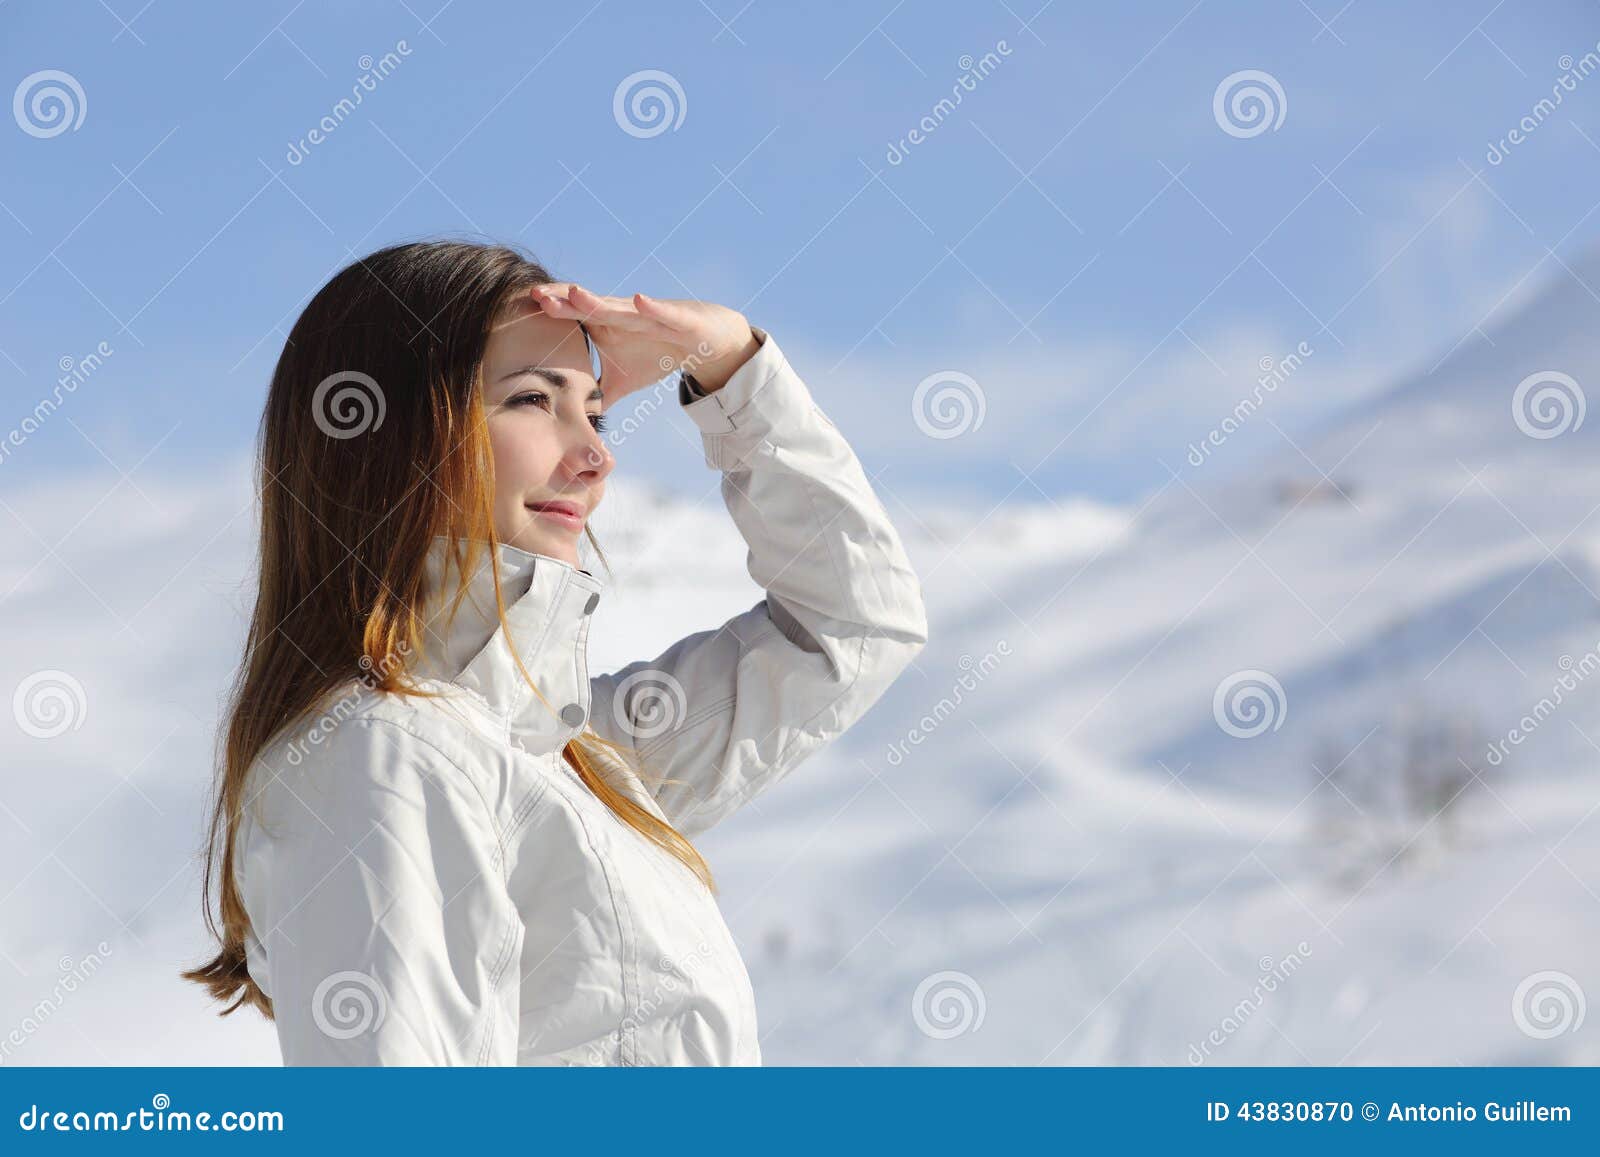 Winter Women On Mountain. Winter Woman Happy. Winter Woman Snow